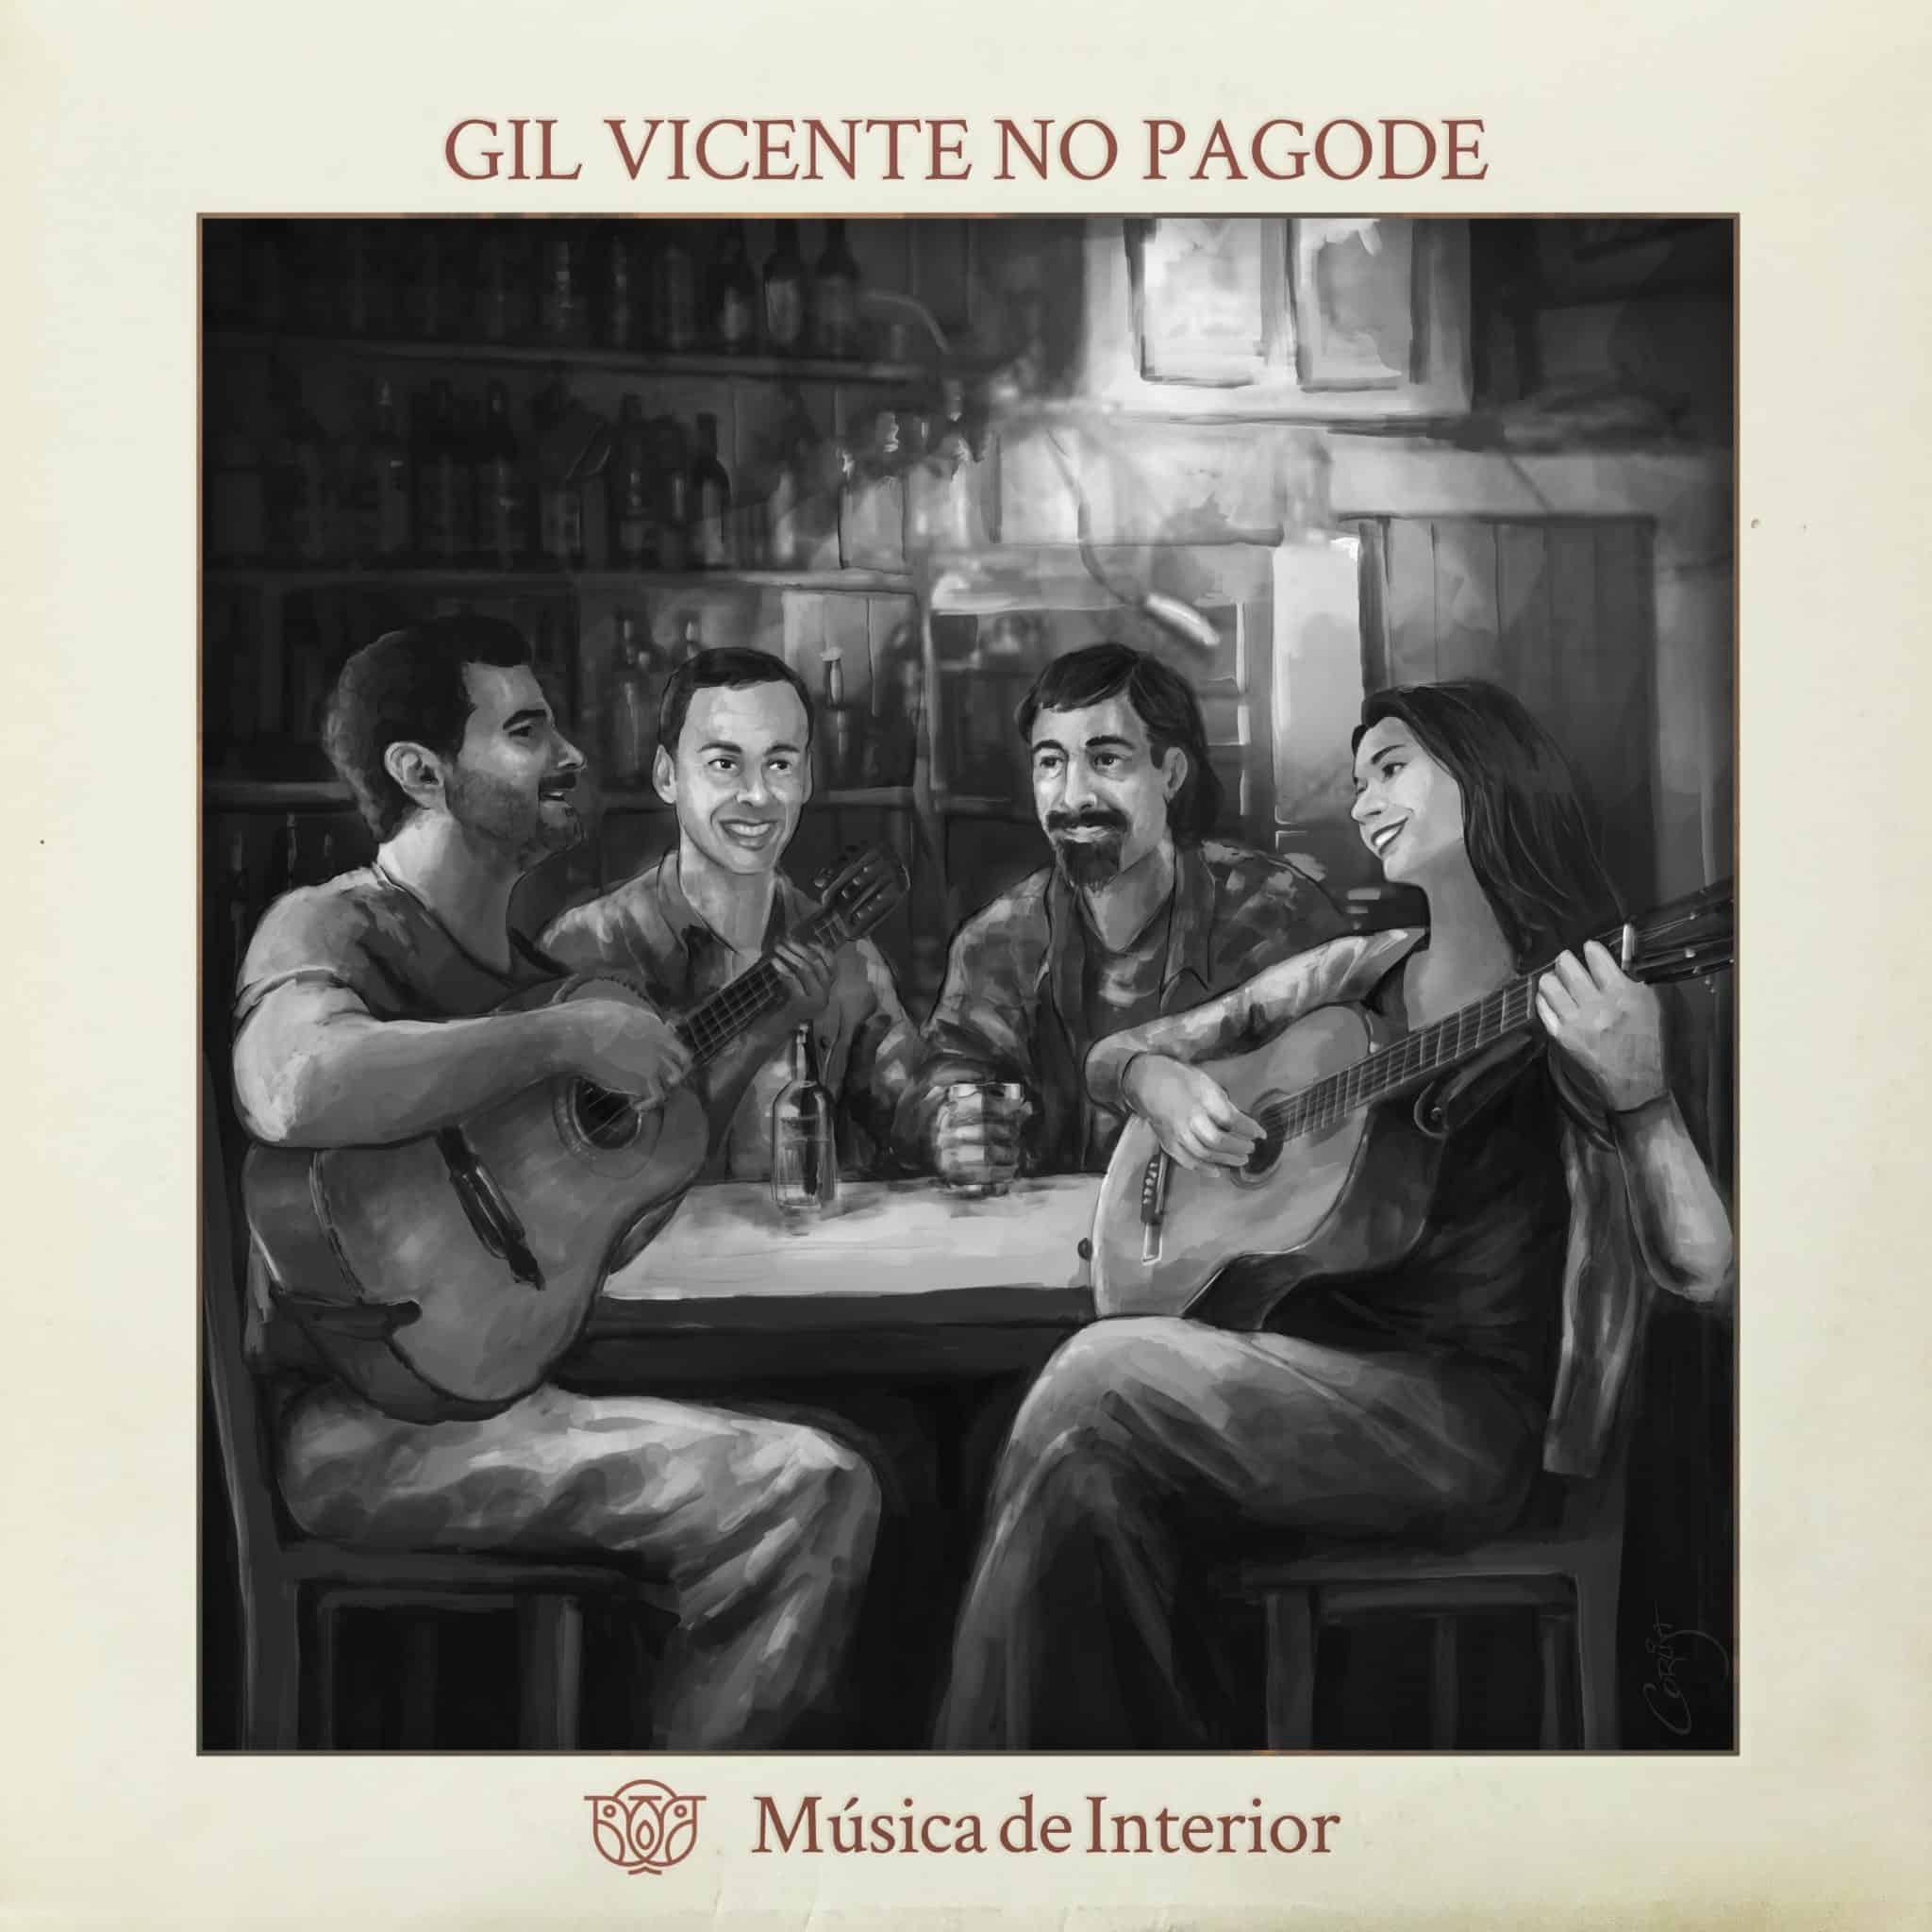 revistaprosaversoearte.com - Música de Interior lança single 'Gil Vicente no pagode'